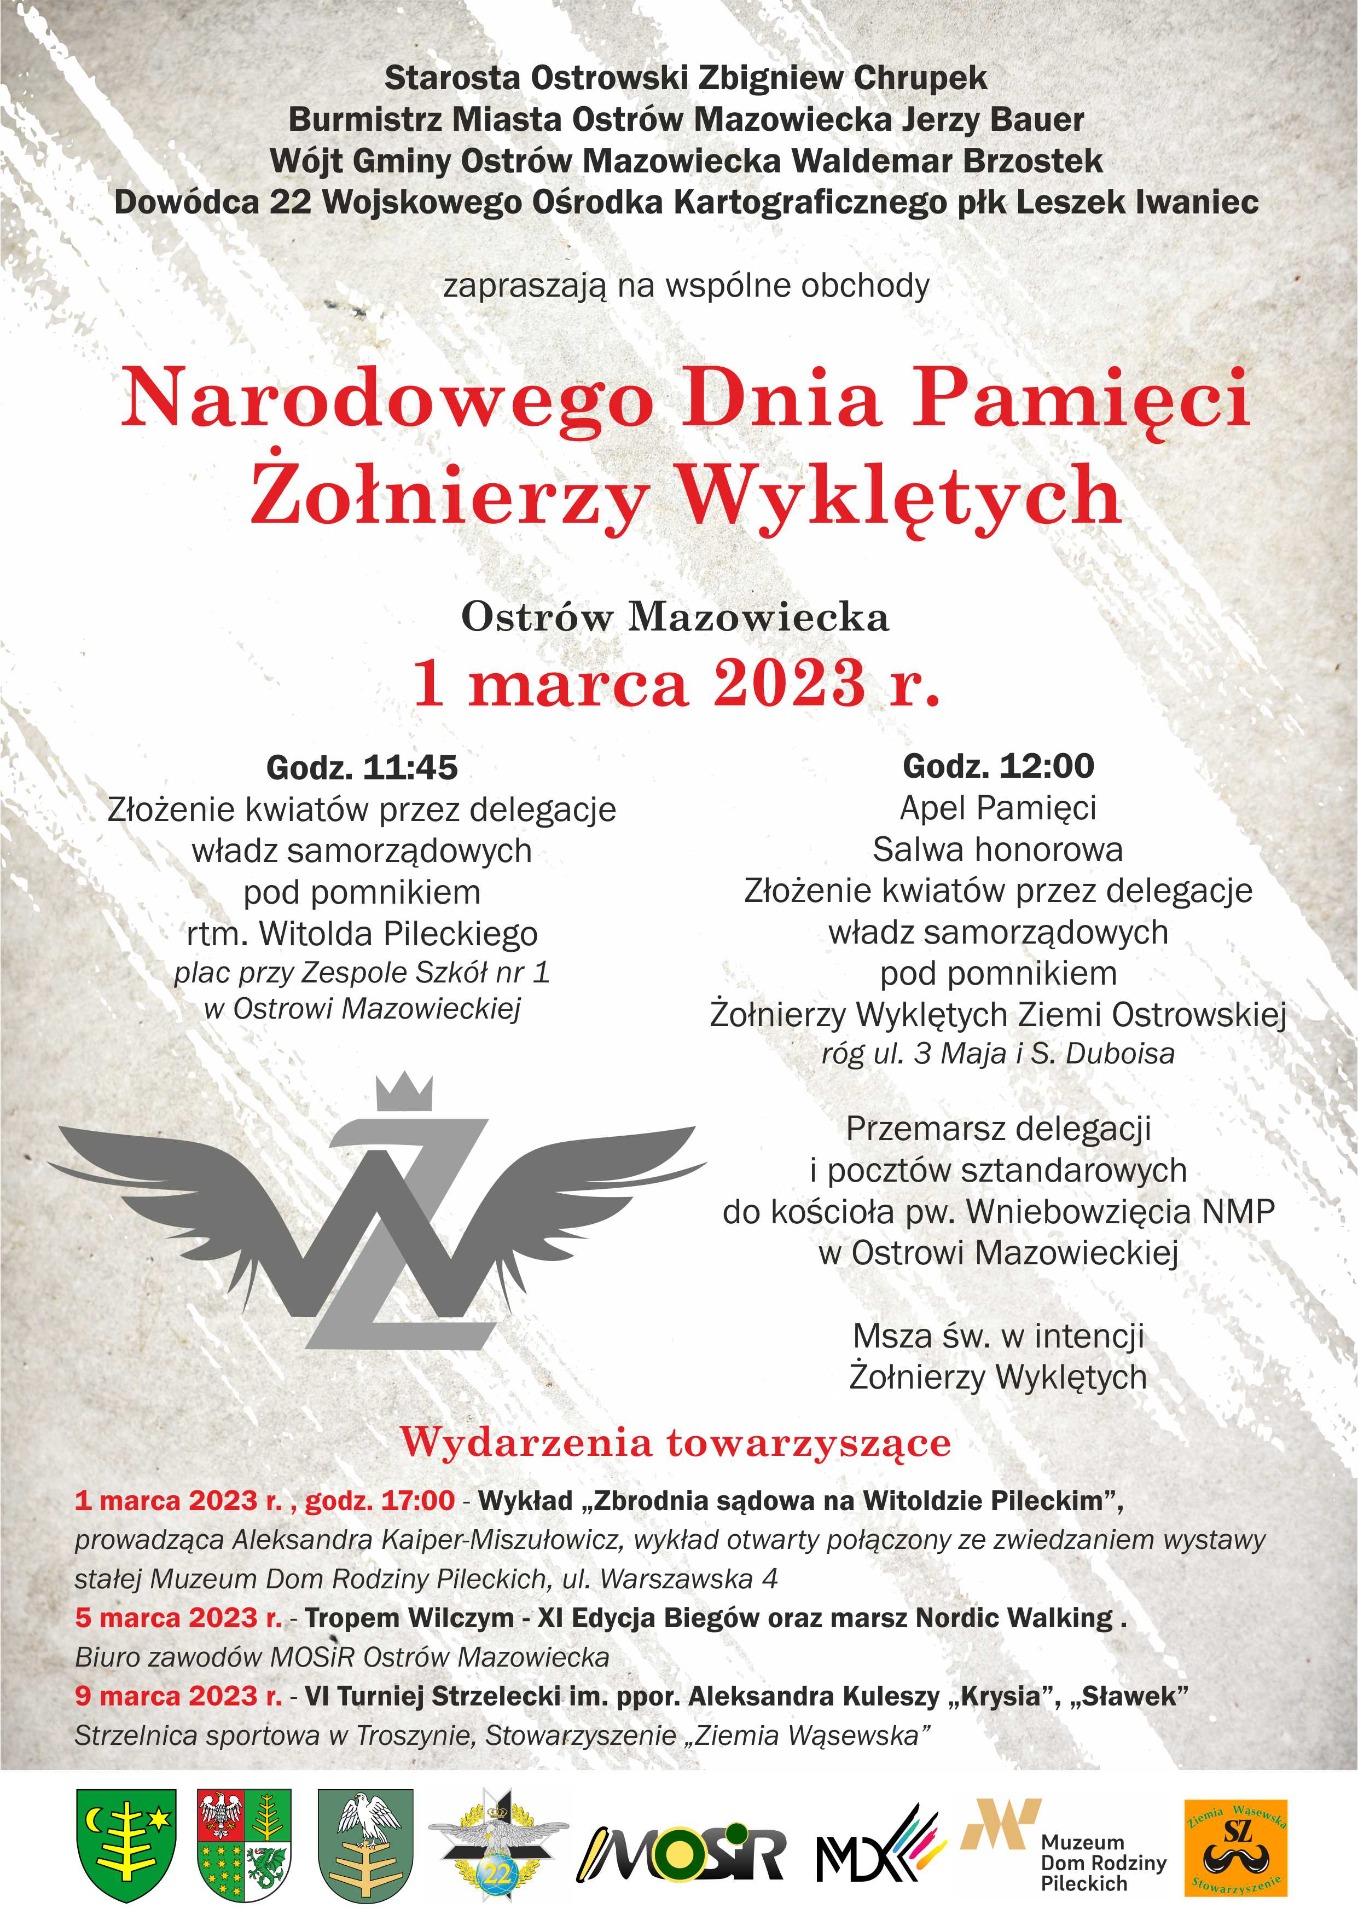 Program obchodów Narodowego Dnia Pamięci Żołnierzy Wyklętych w Ostrowi Maz. - Obrazek 1